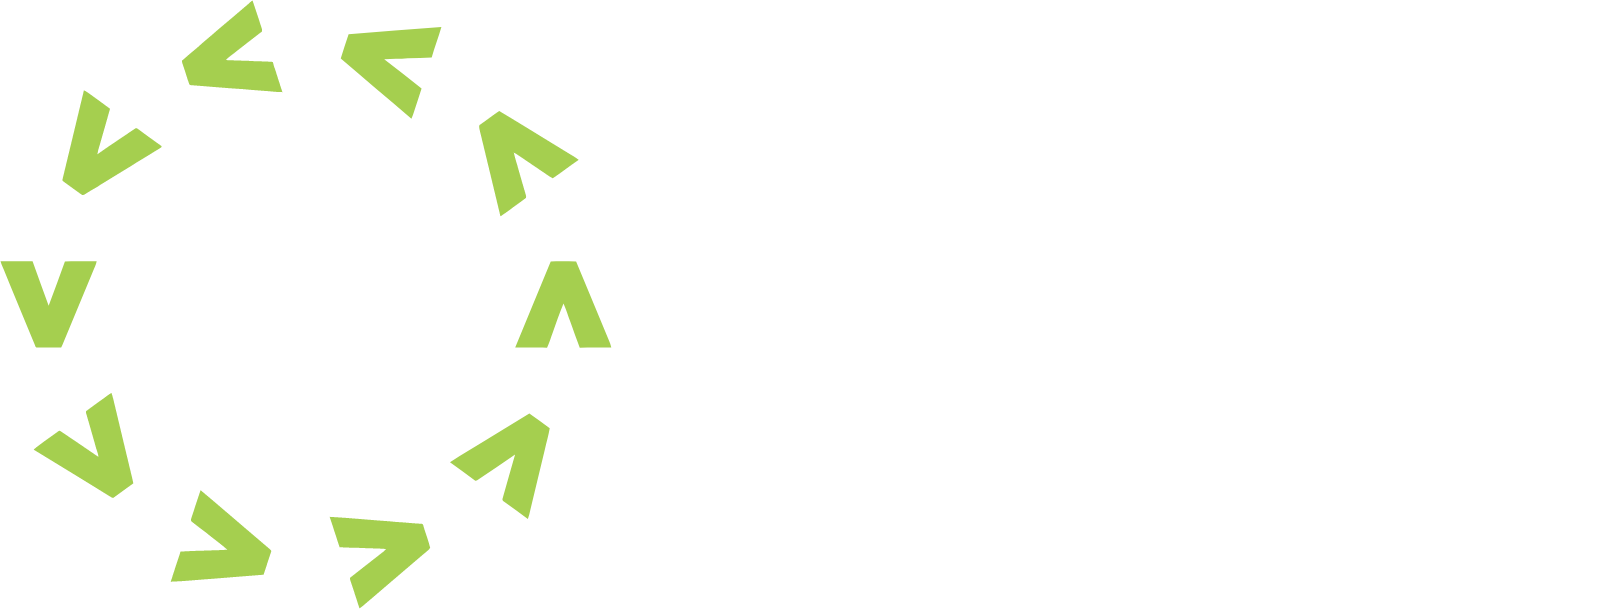 Verra Mobility logo large for dark backgrounds (transparent PNG)